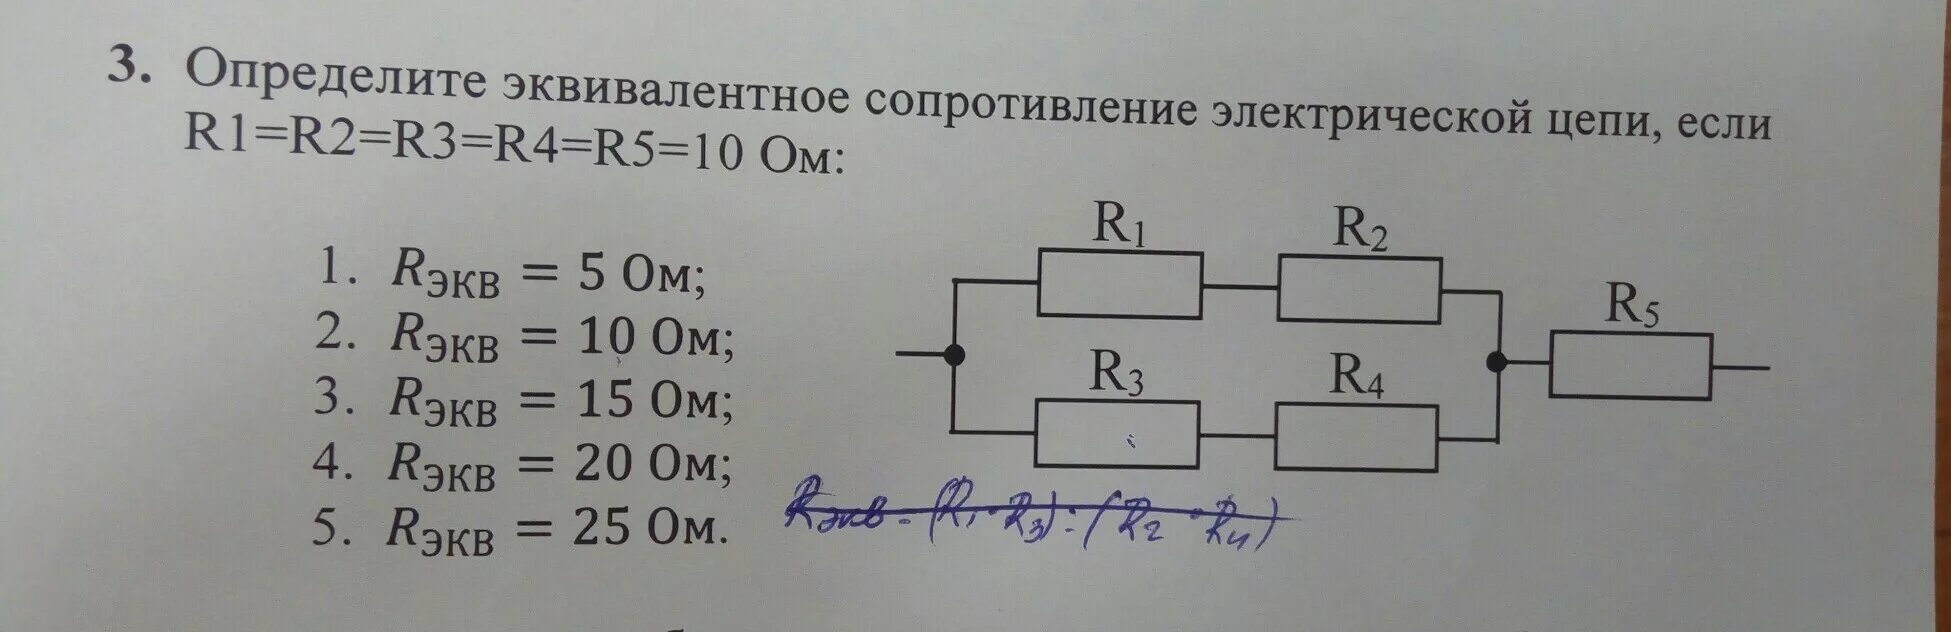 Как определить сопротивление цепи формула. Определить сопротивление резистора r1. Эквивалентное сопротивление участка цепи формула. Эквивалентное сопротивление для 5 резисторов. Эквивалентное сопротивление цепи r5 r6.